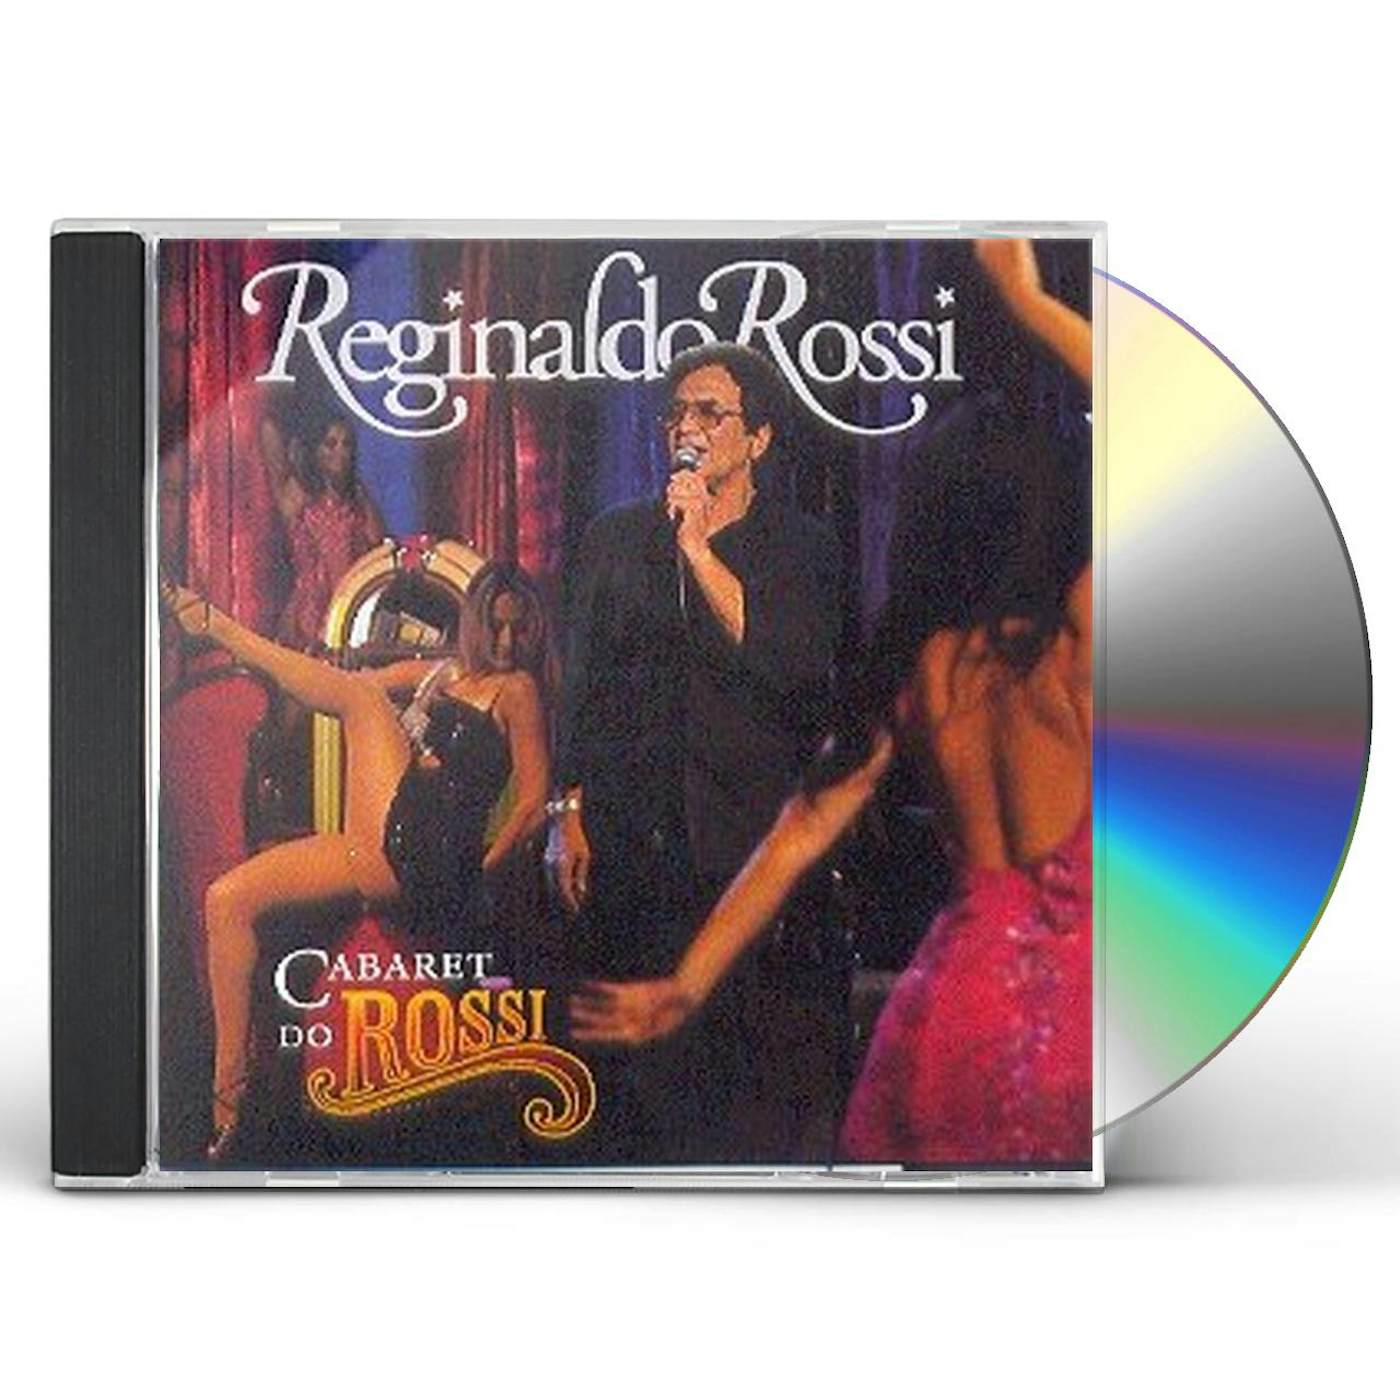 Reginaldo Rossi CABARE DO ROSSI CD